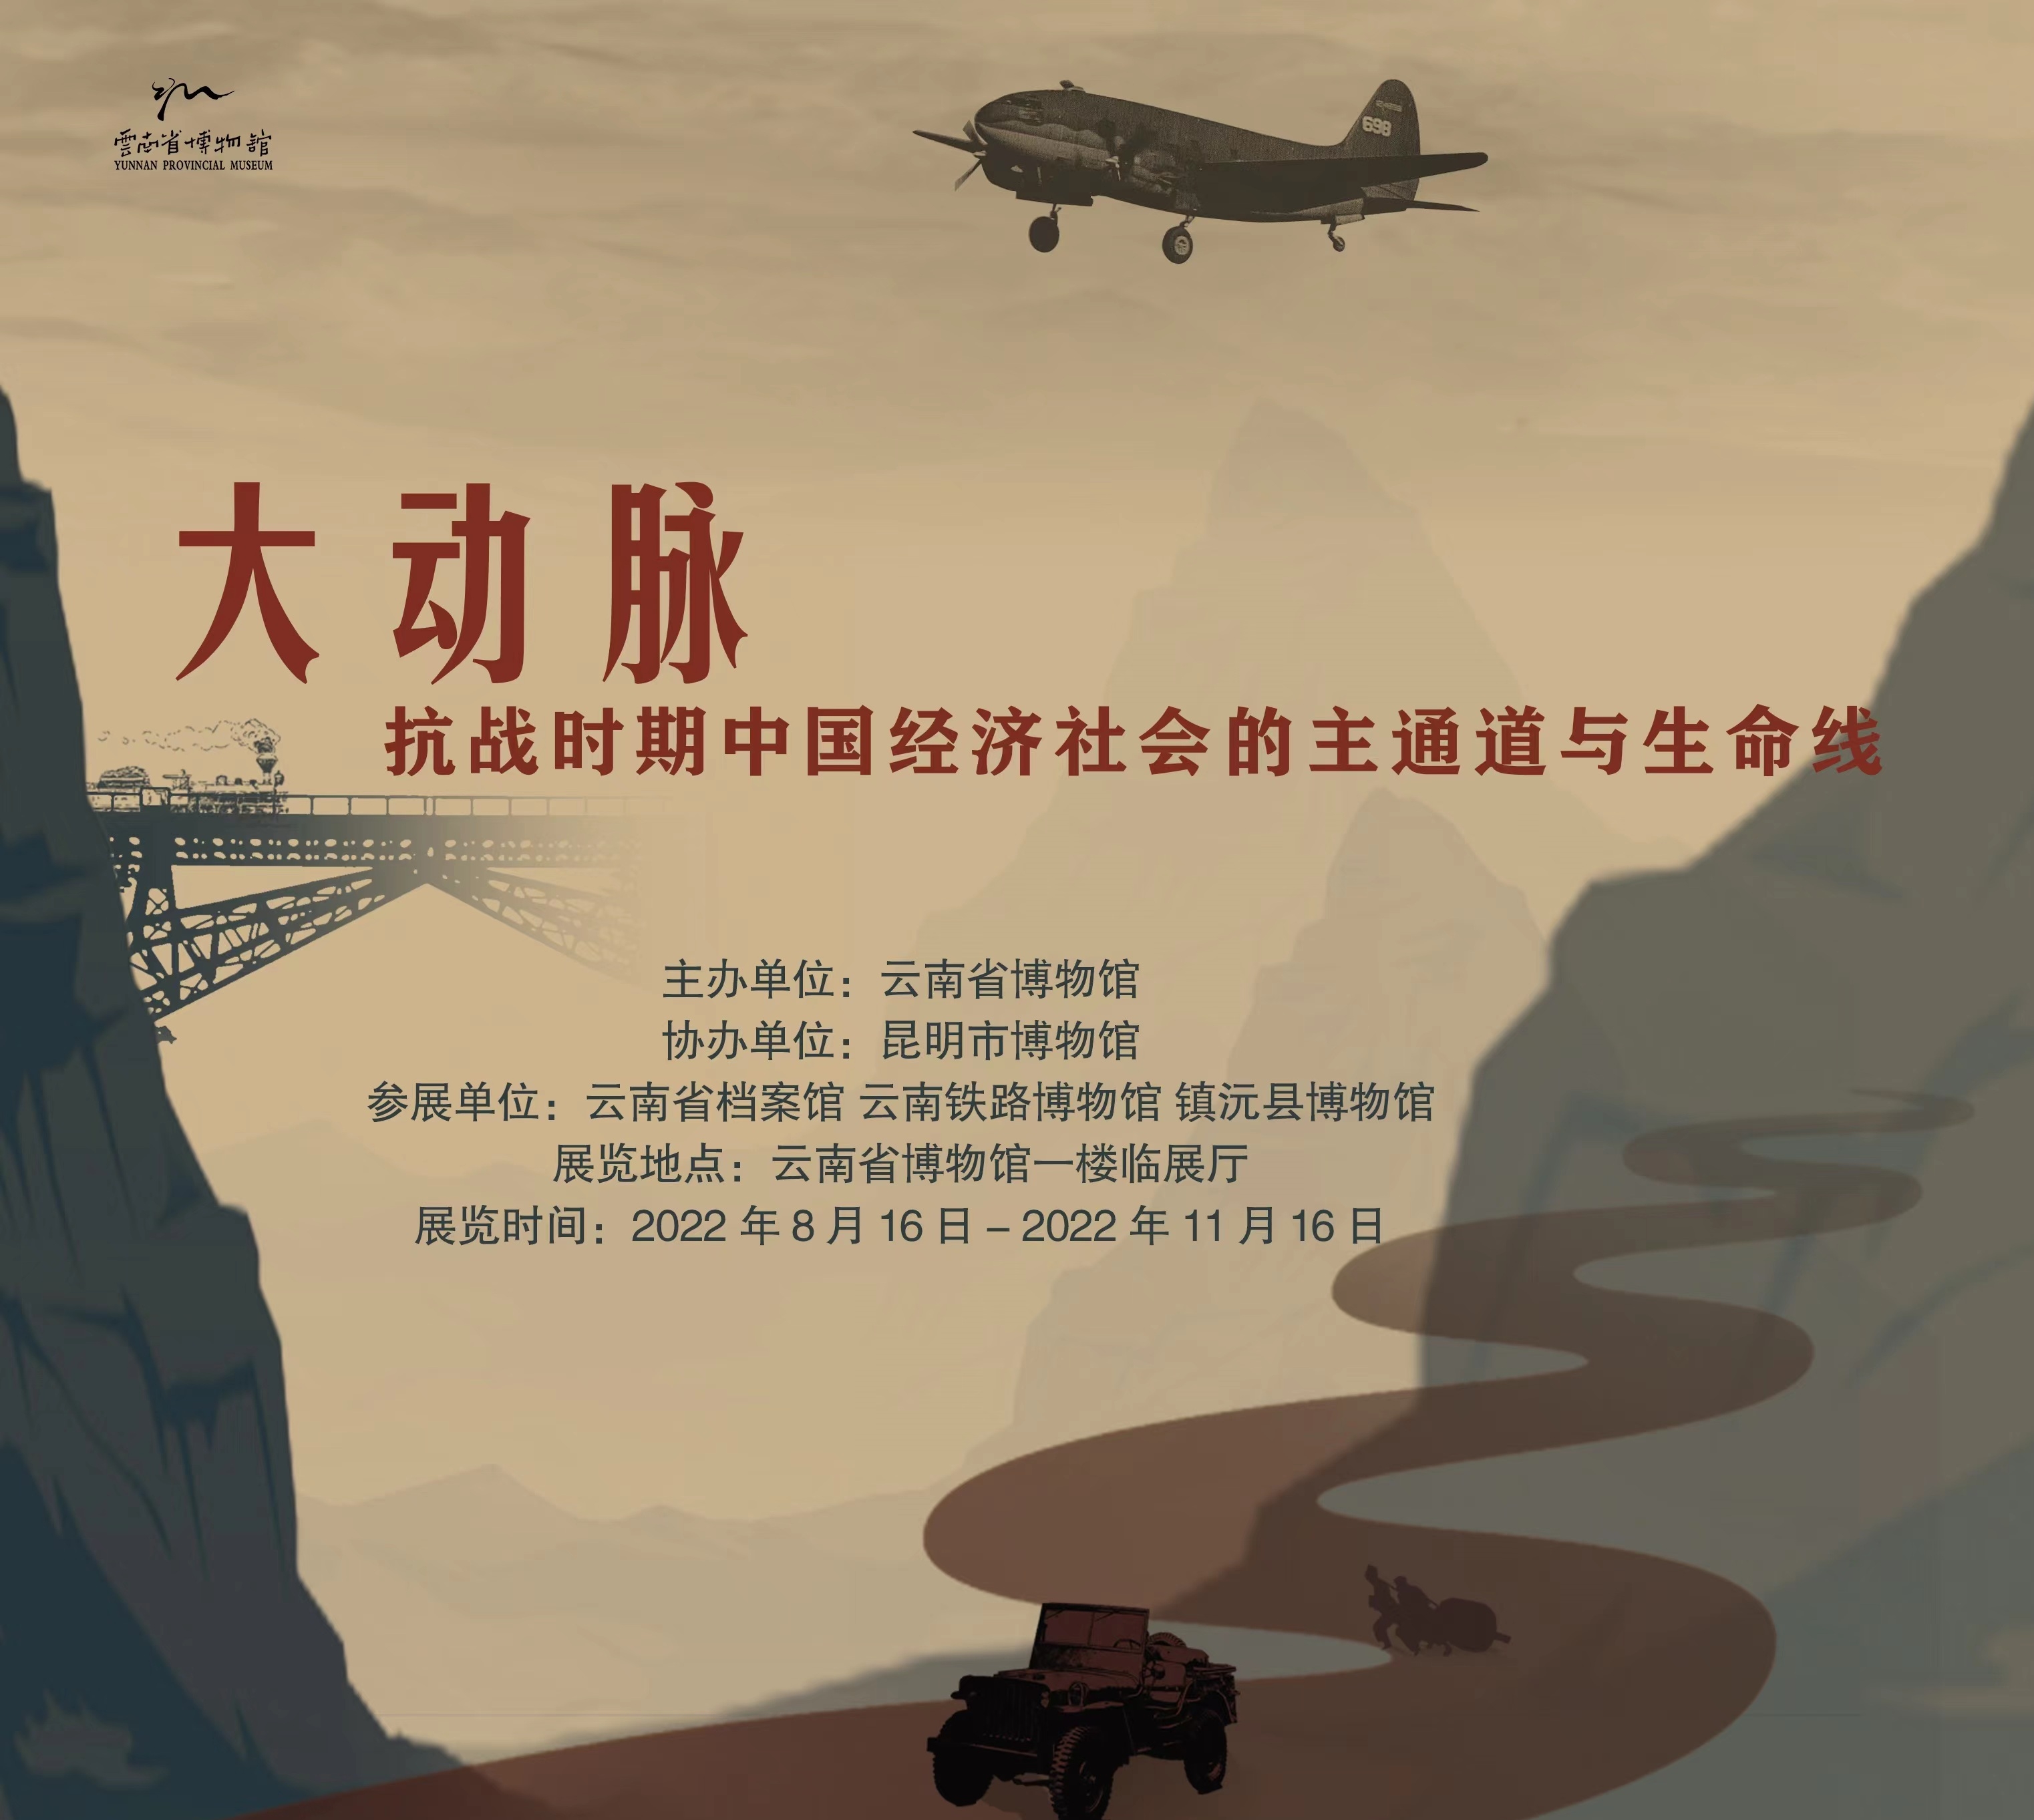 『展覽回顧』大動脈——抗戰時期中國經濟社會主通道與生命線